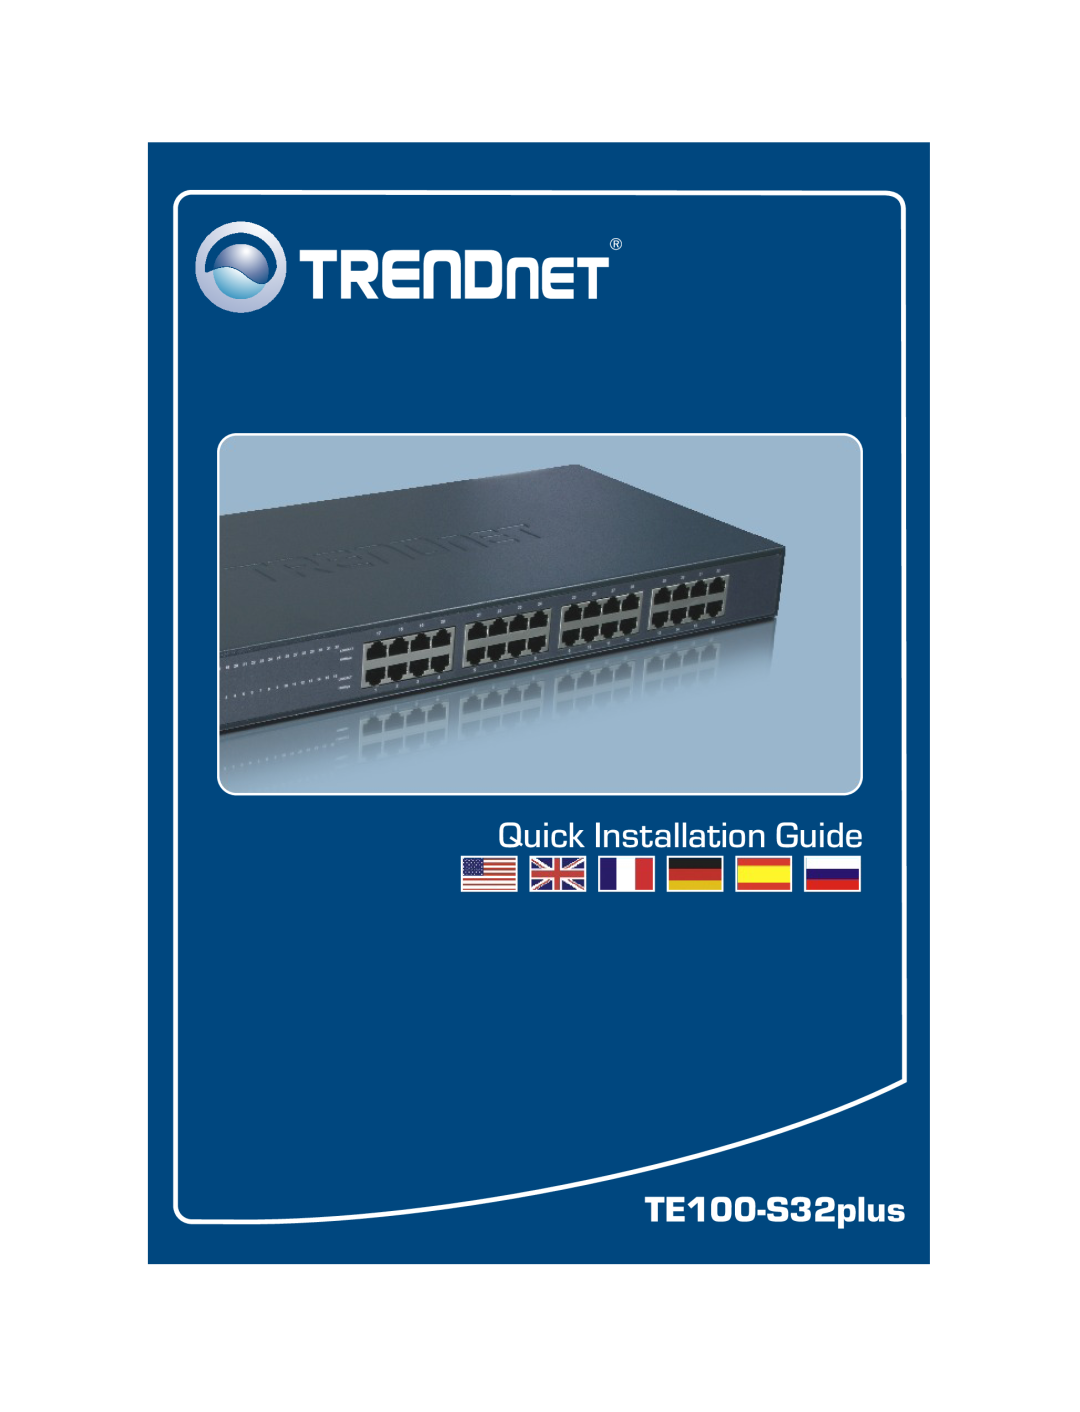 TRENDnet manual Quick Installation Guide, TE100-S32plus 